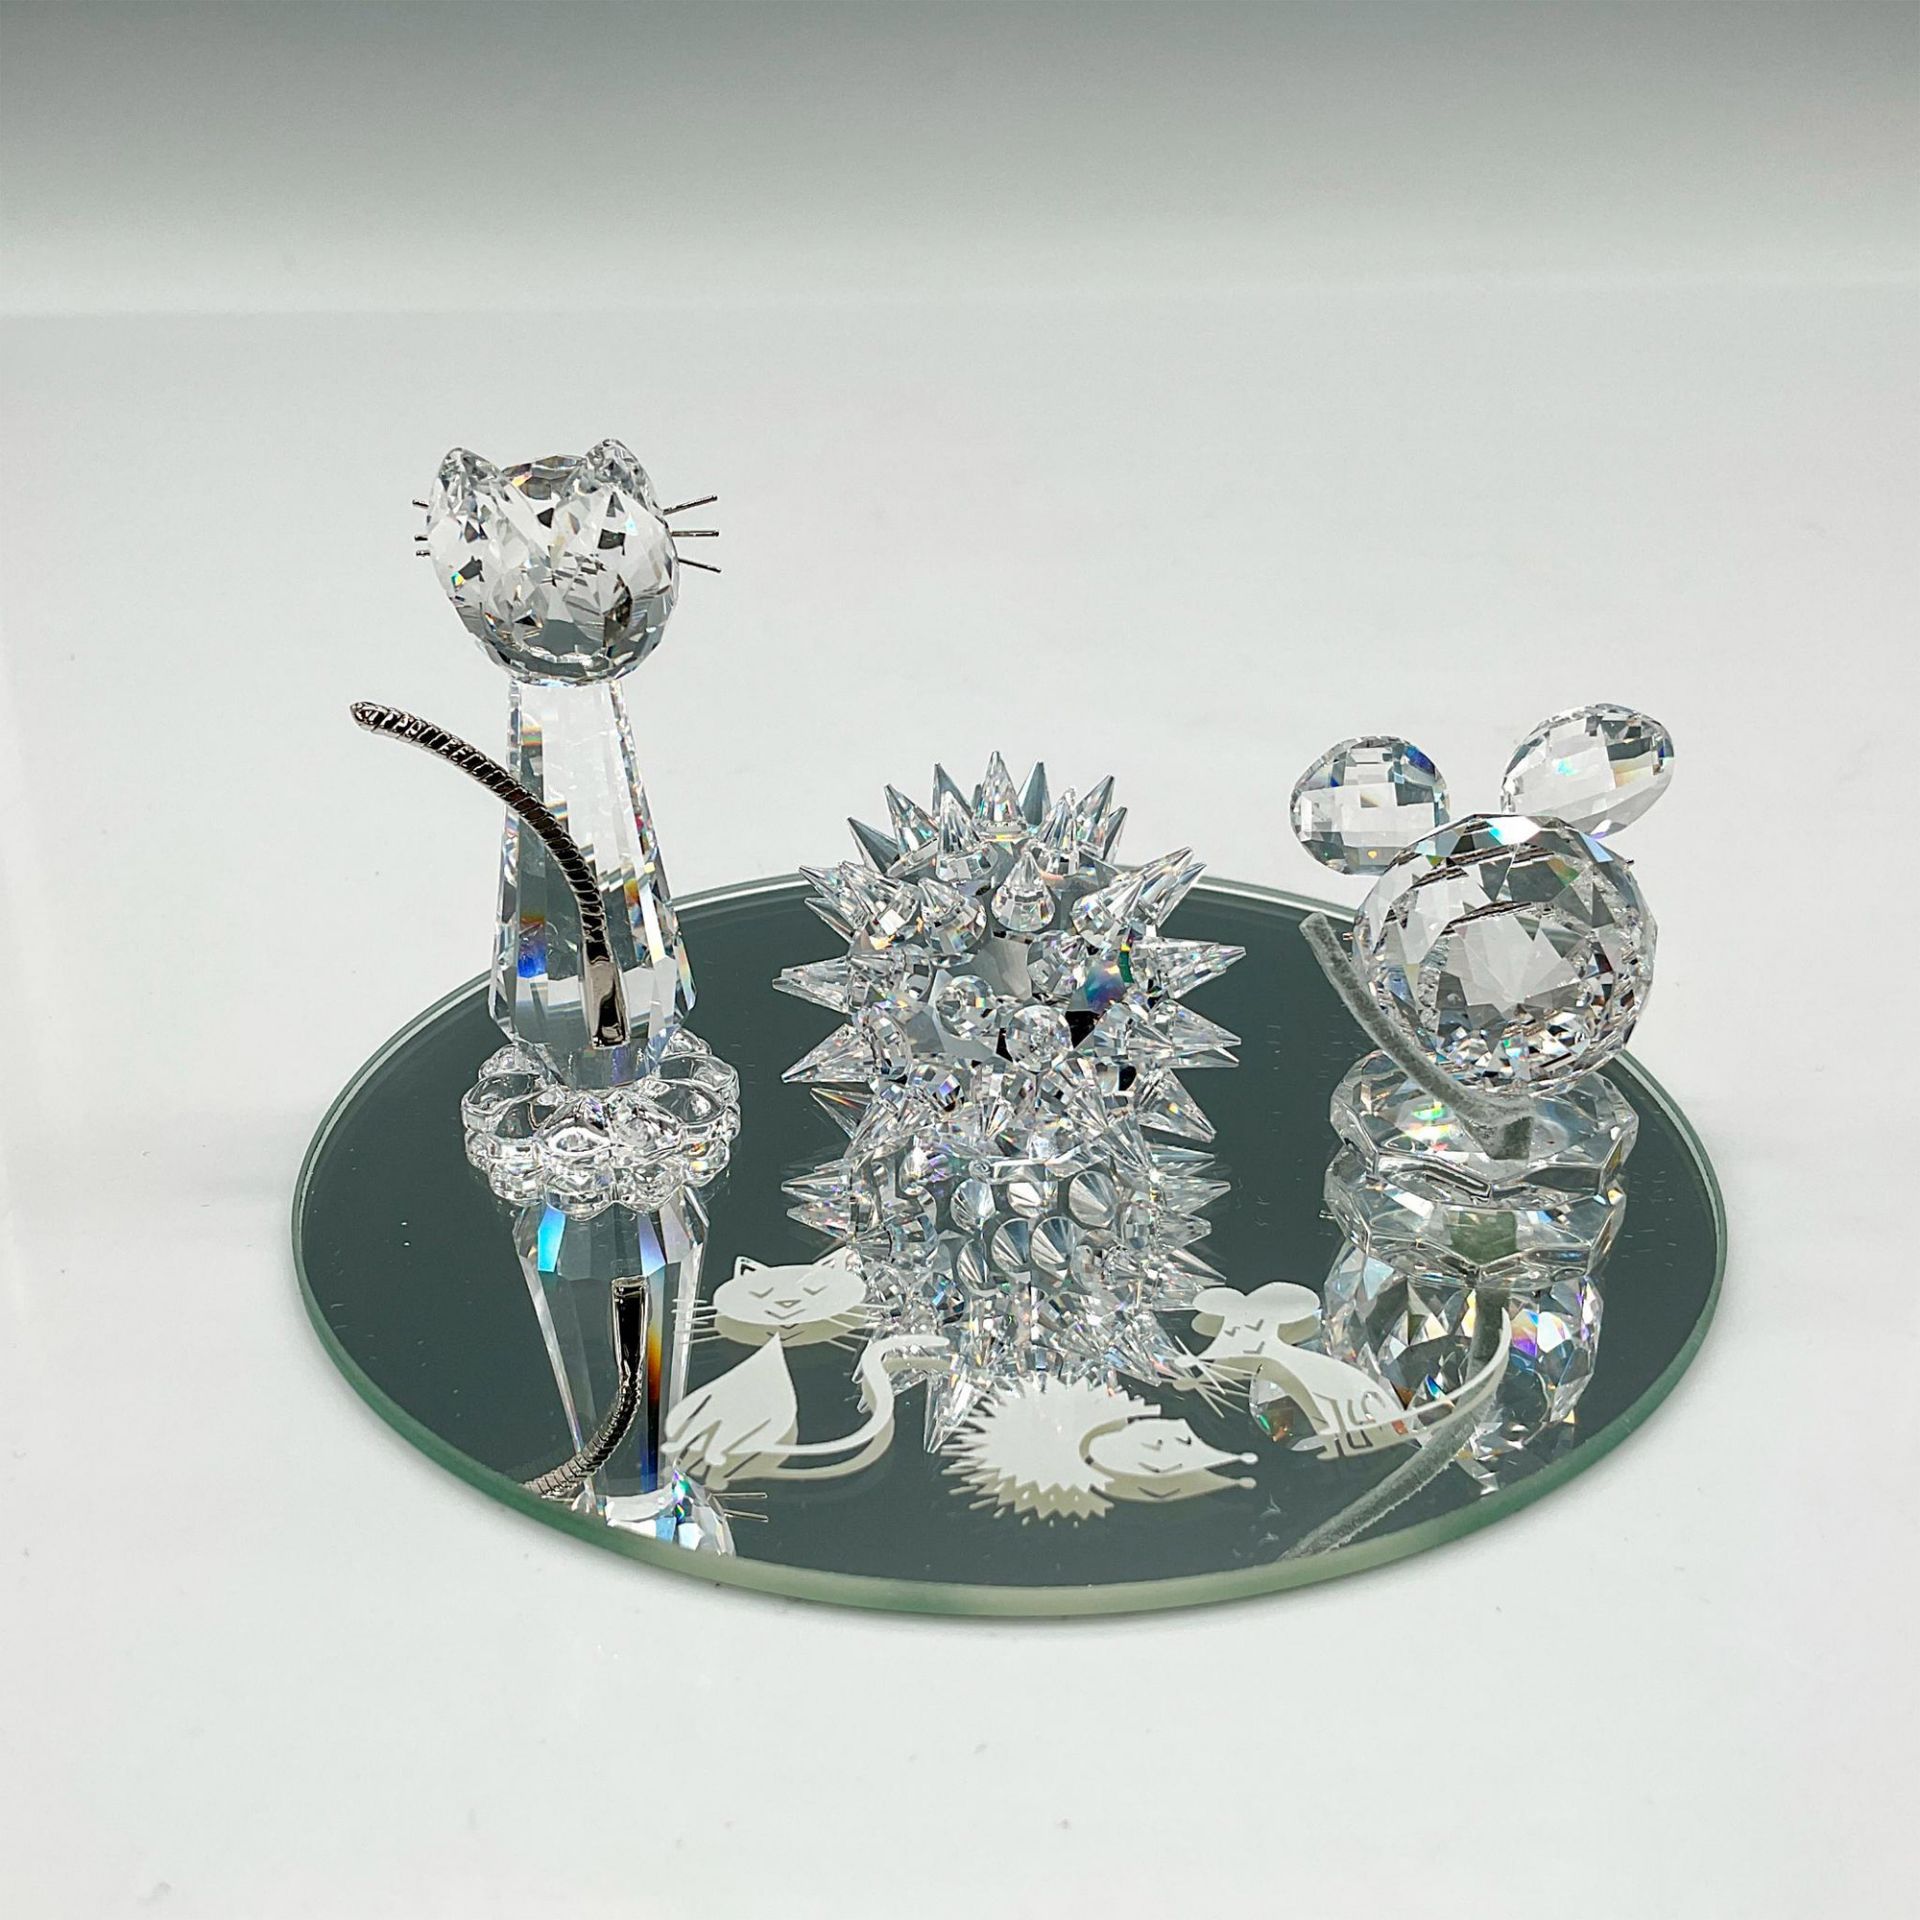 Swarovski Crystal Figurine, Starter Set - Image 2 of 4